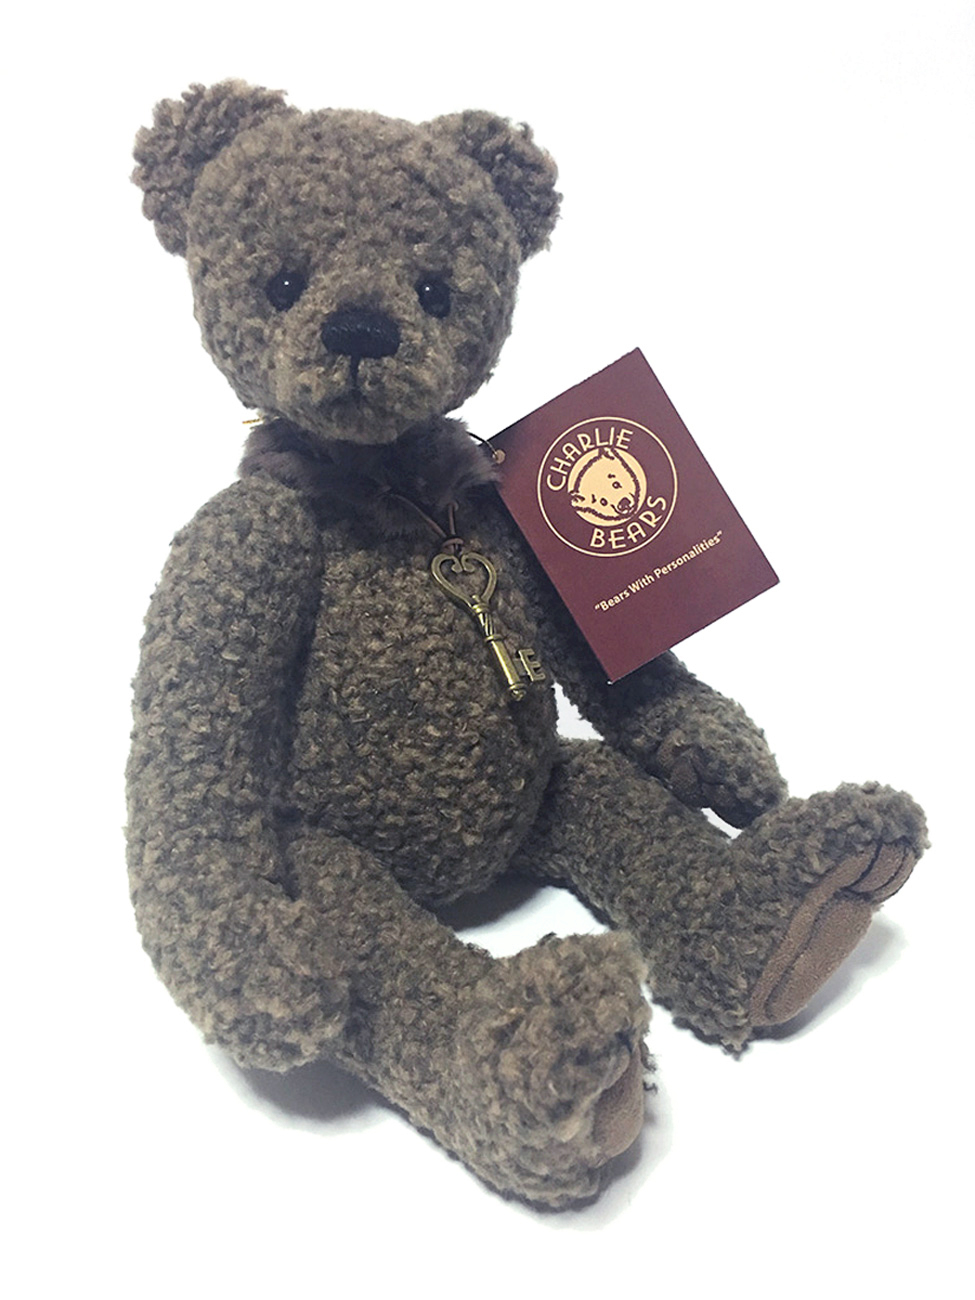 国産格安新品 英国チャーリーベアーズ社 Charlie Bears UK ミスター・カドルズ テディベア 38cm Mr Cuddles Teddy Bear ハンドメイドぬいぐるみ 体長30cm - 50cm